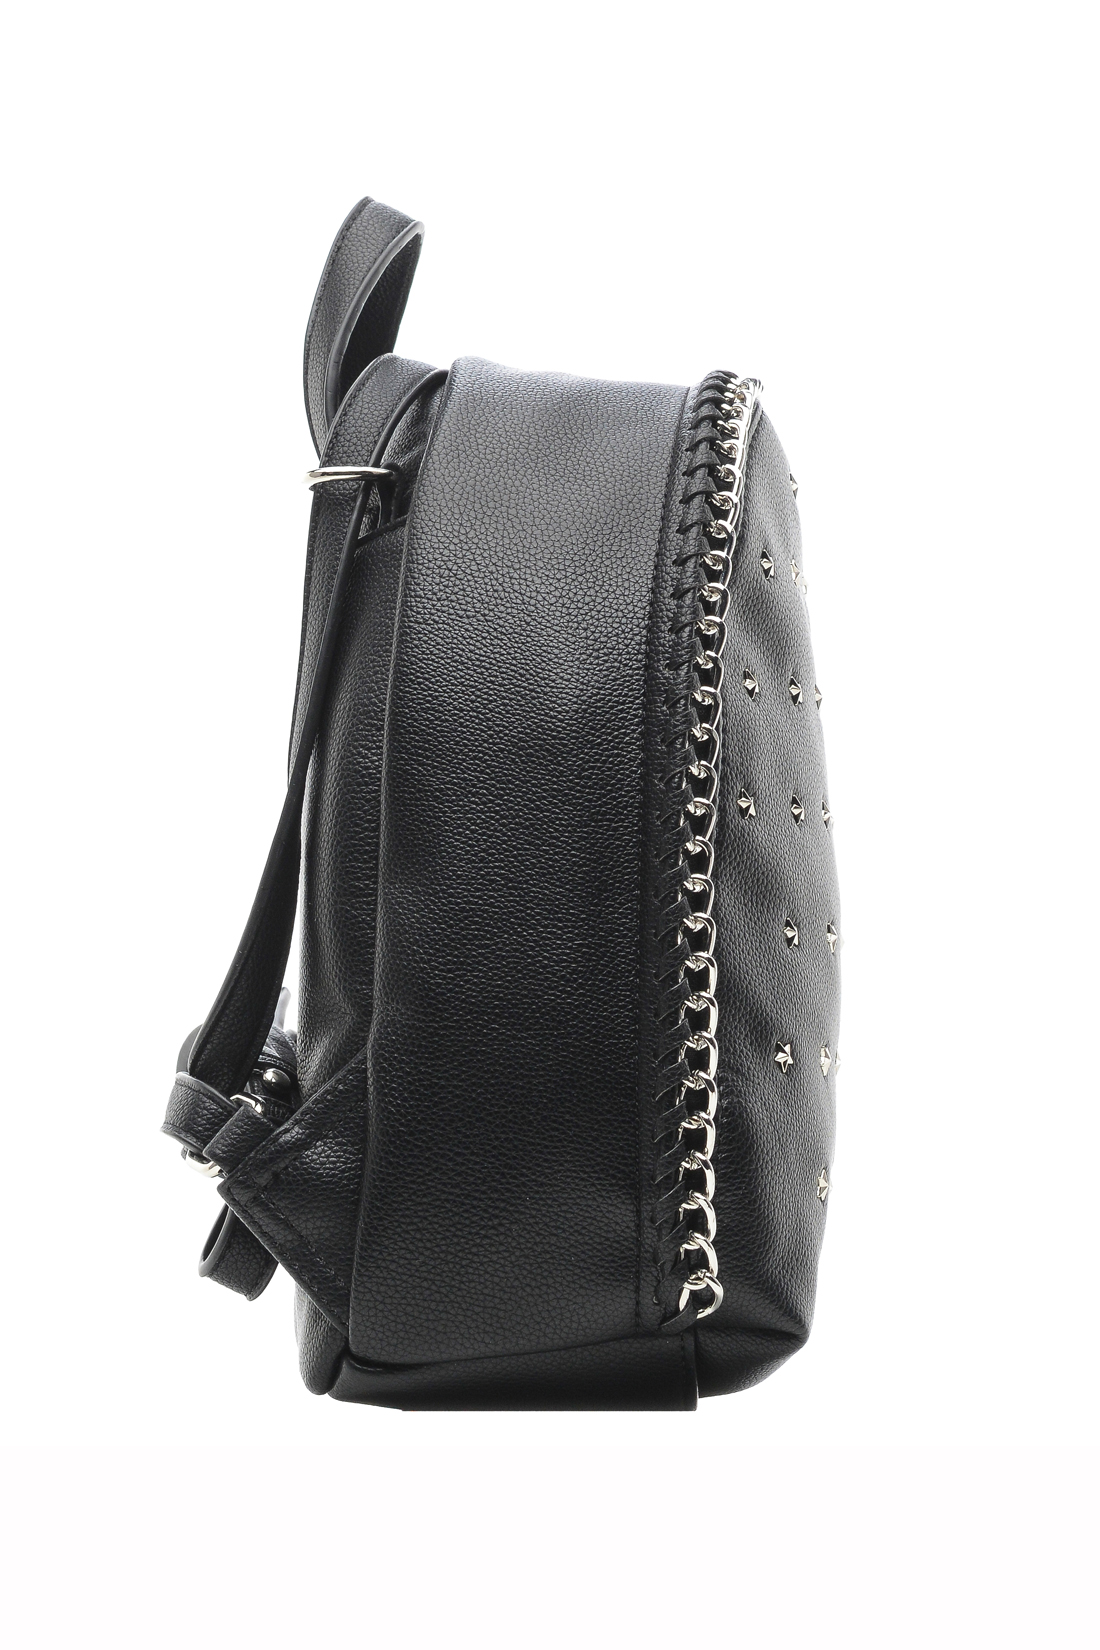 Рюкзак с металлической отделкой (арт. baon B379004), размер Без/раз, цвет черный Рюкзак с металлической отделкой (арт. baon B379004) - фото 5